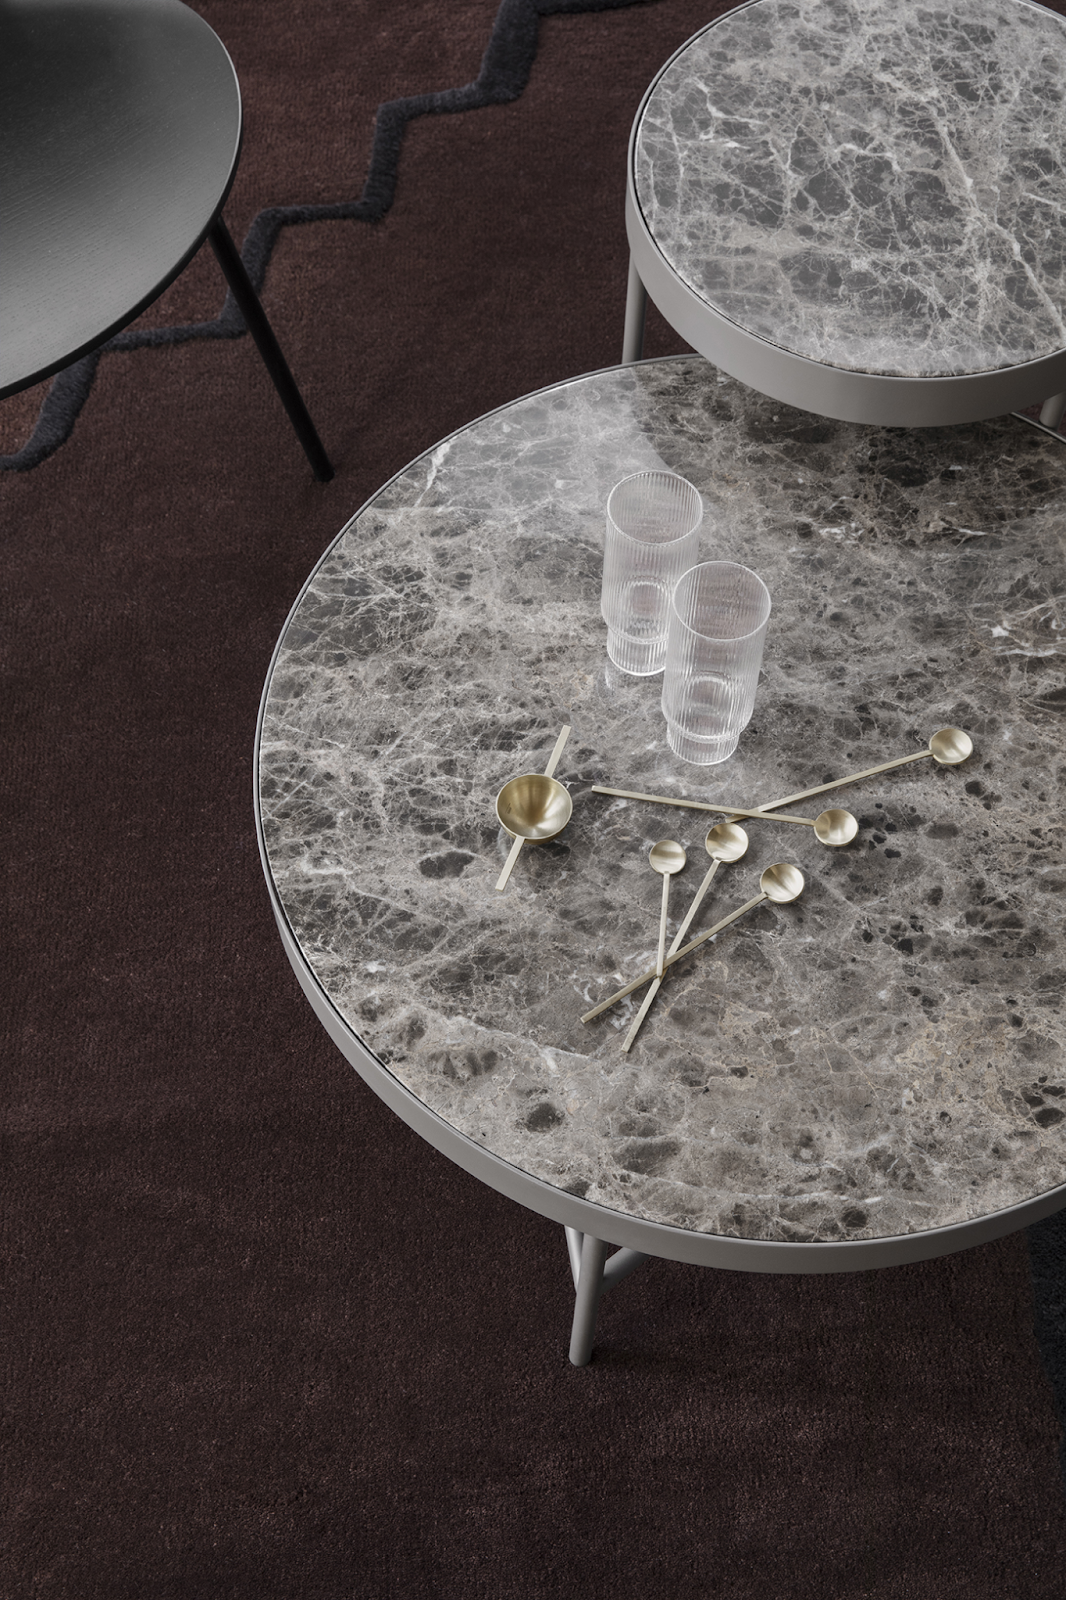 Đá Granite tự nhiên là loại vật liệu làm bàn trà rất tốt